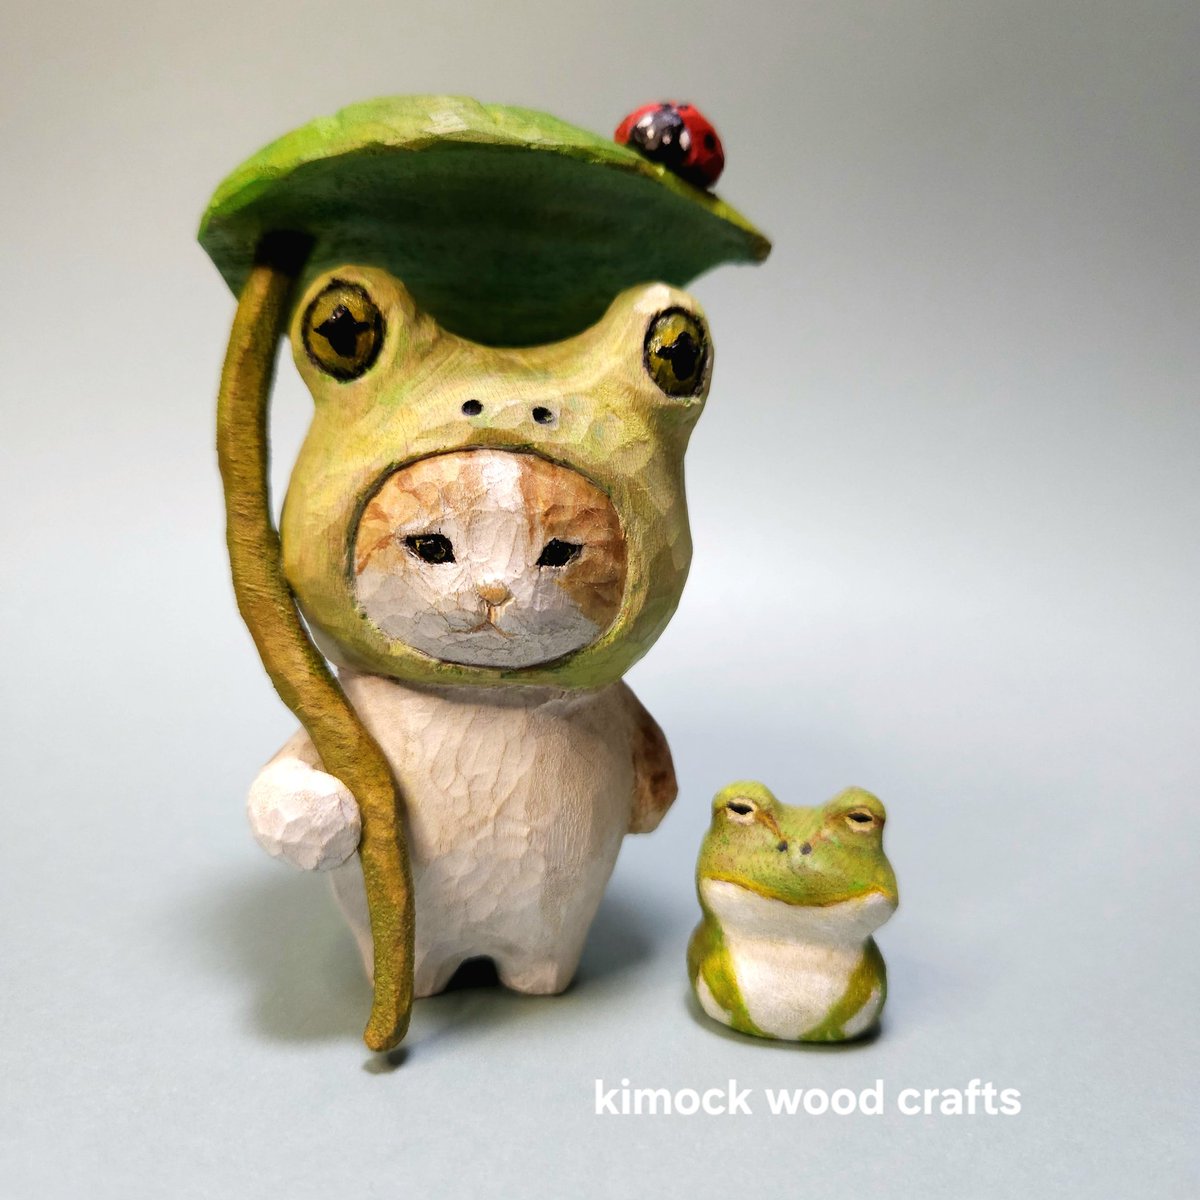 雨の中、アマガエルさんに出会ったよ🐸

#木彫り　#猫　#カエル　#ハンドメイド　#彫刻  #作品展　#woodcarving #woodcraft #woodsculpture